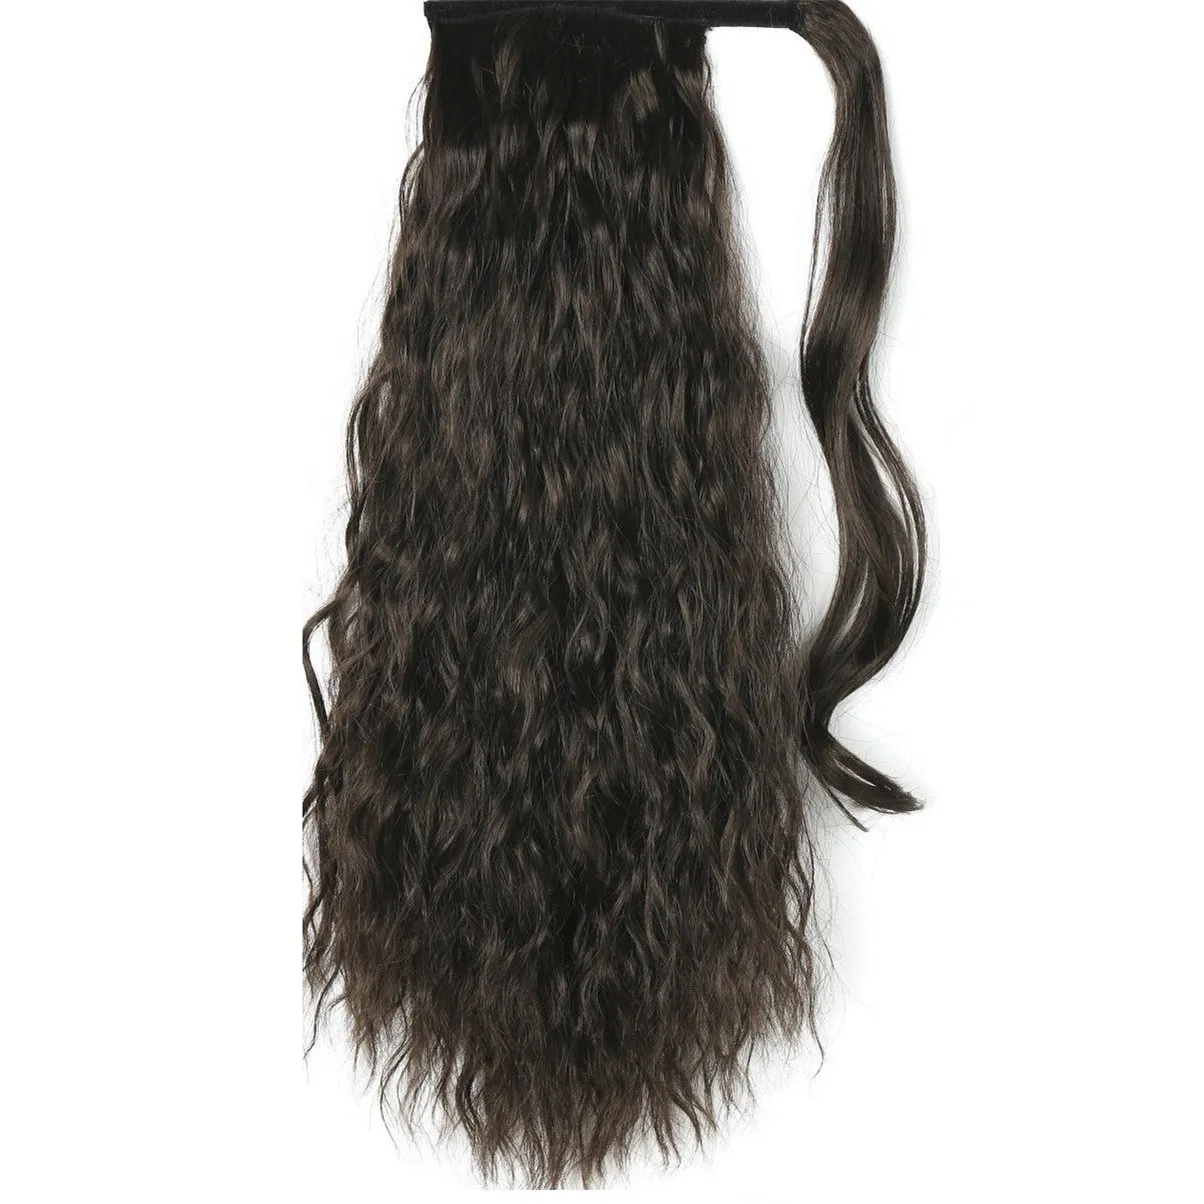 24 inch 160g lange krullende golvende zwarte bruine paardenstaart verlengstaart vrouwen 4 kleuren lange broodjes klauw wrap haarpony staart haarstukje